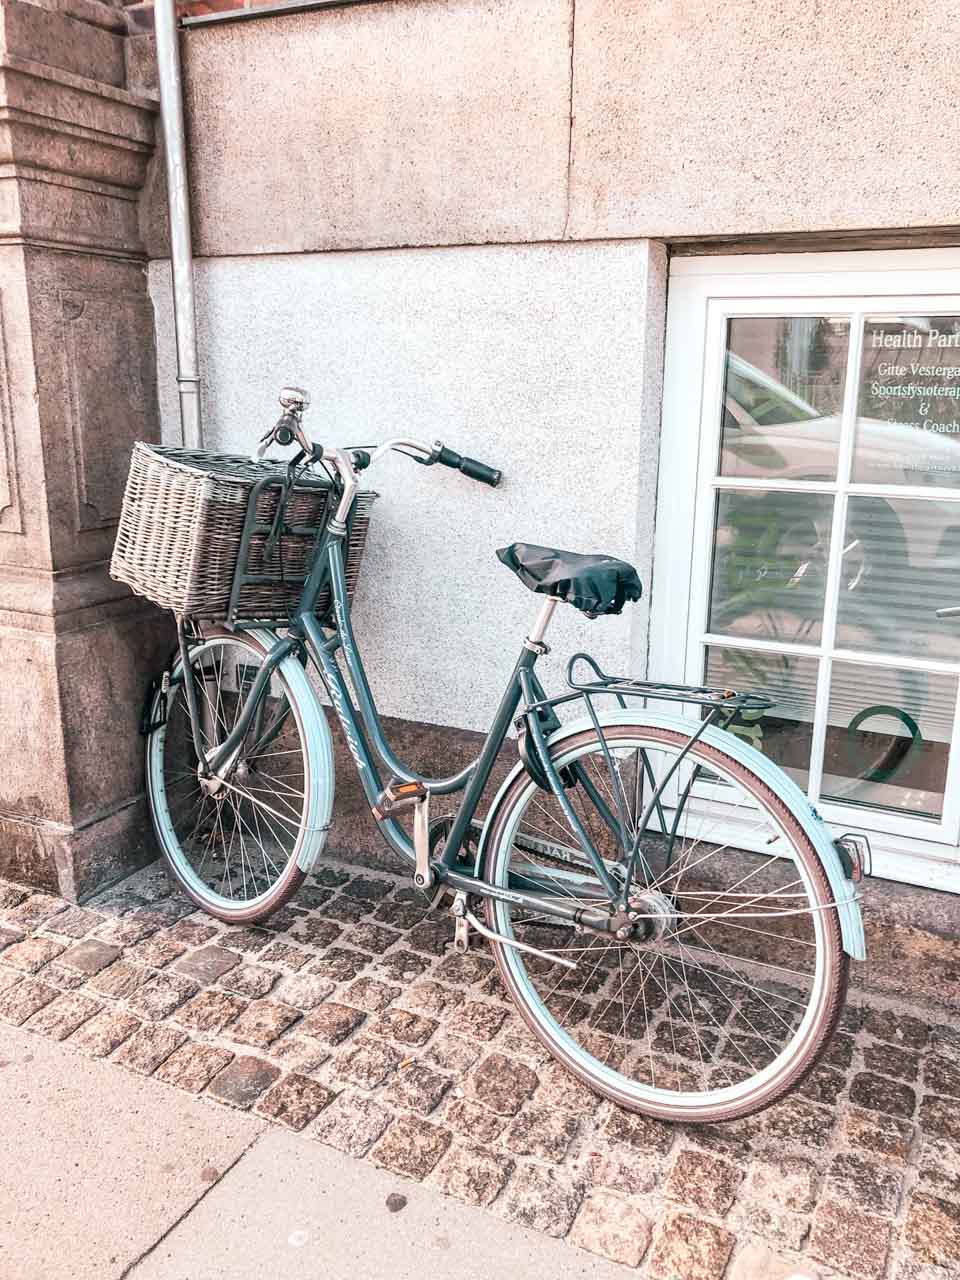 A bike outside a building in Copenhagen, Denmark